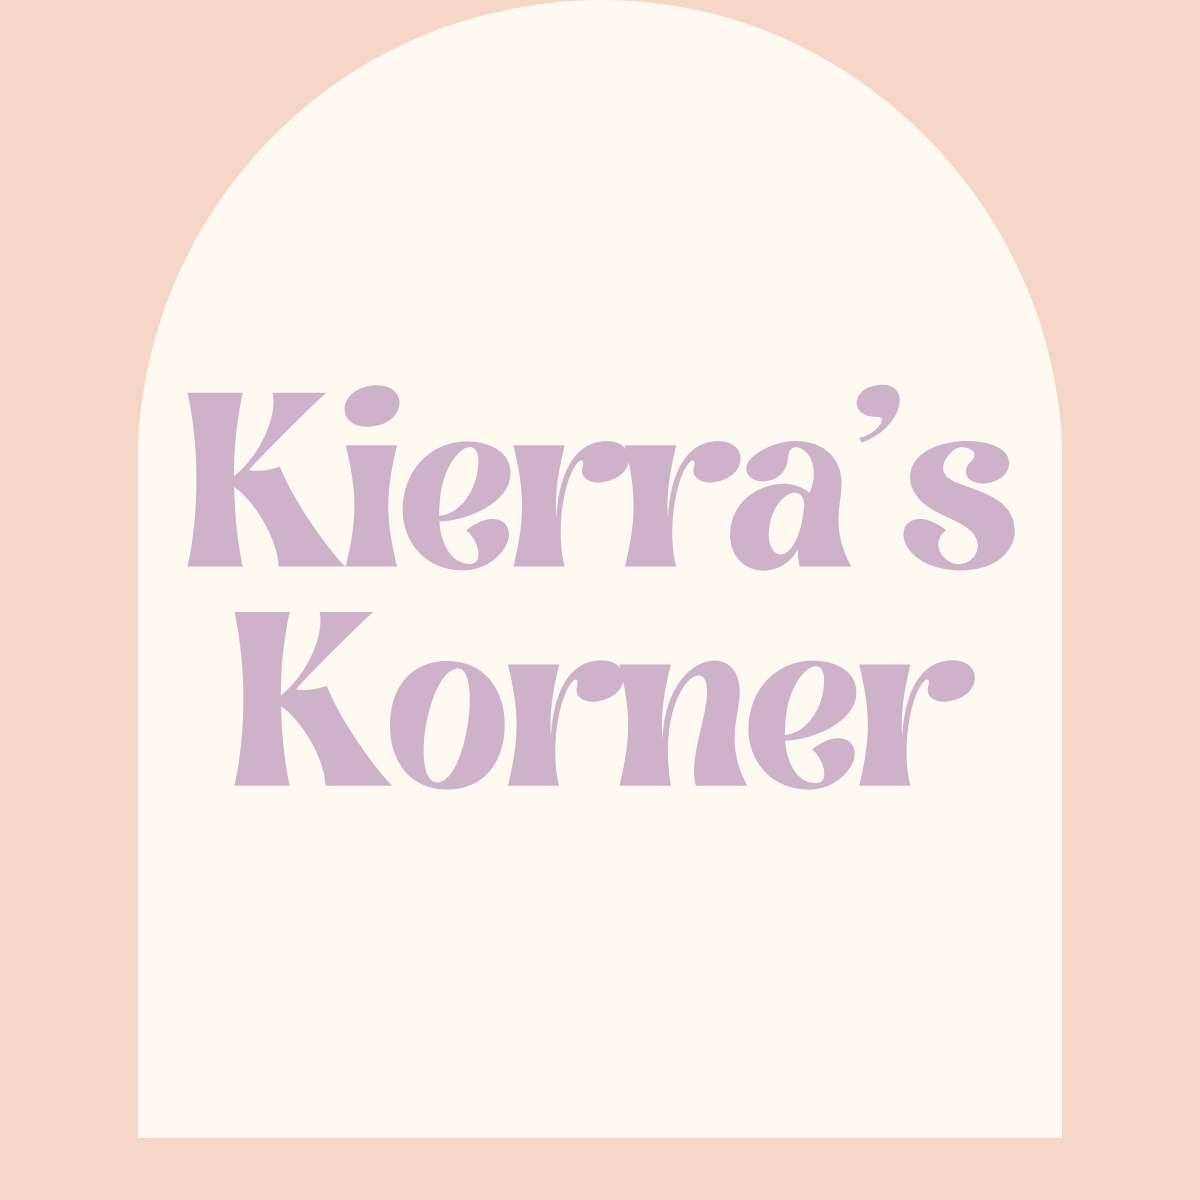 Kierra’s Korner